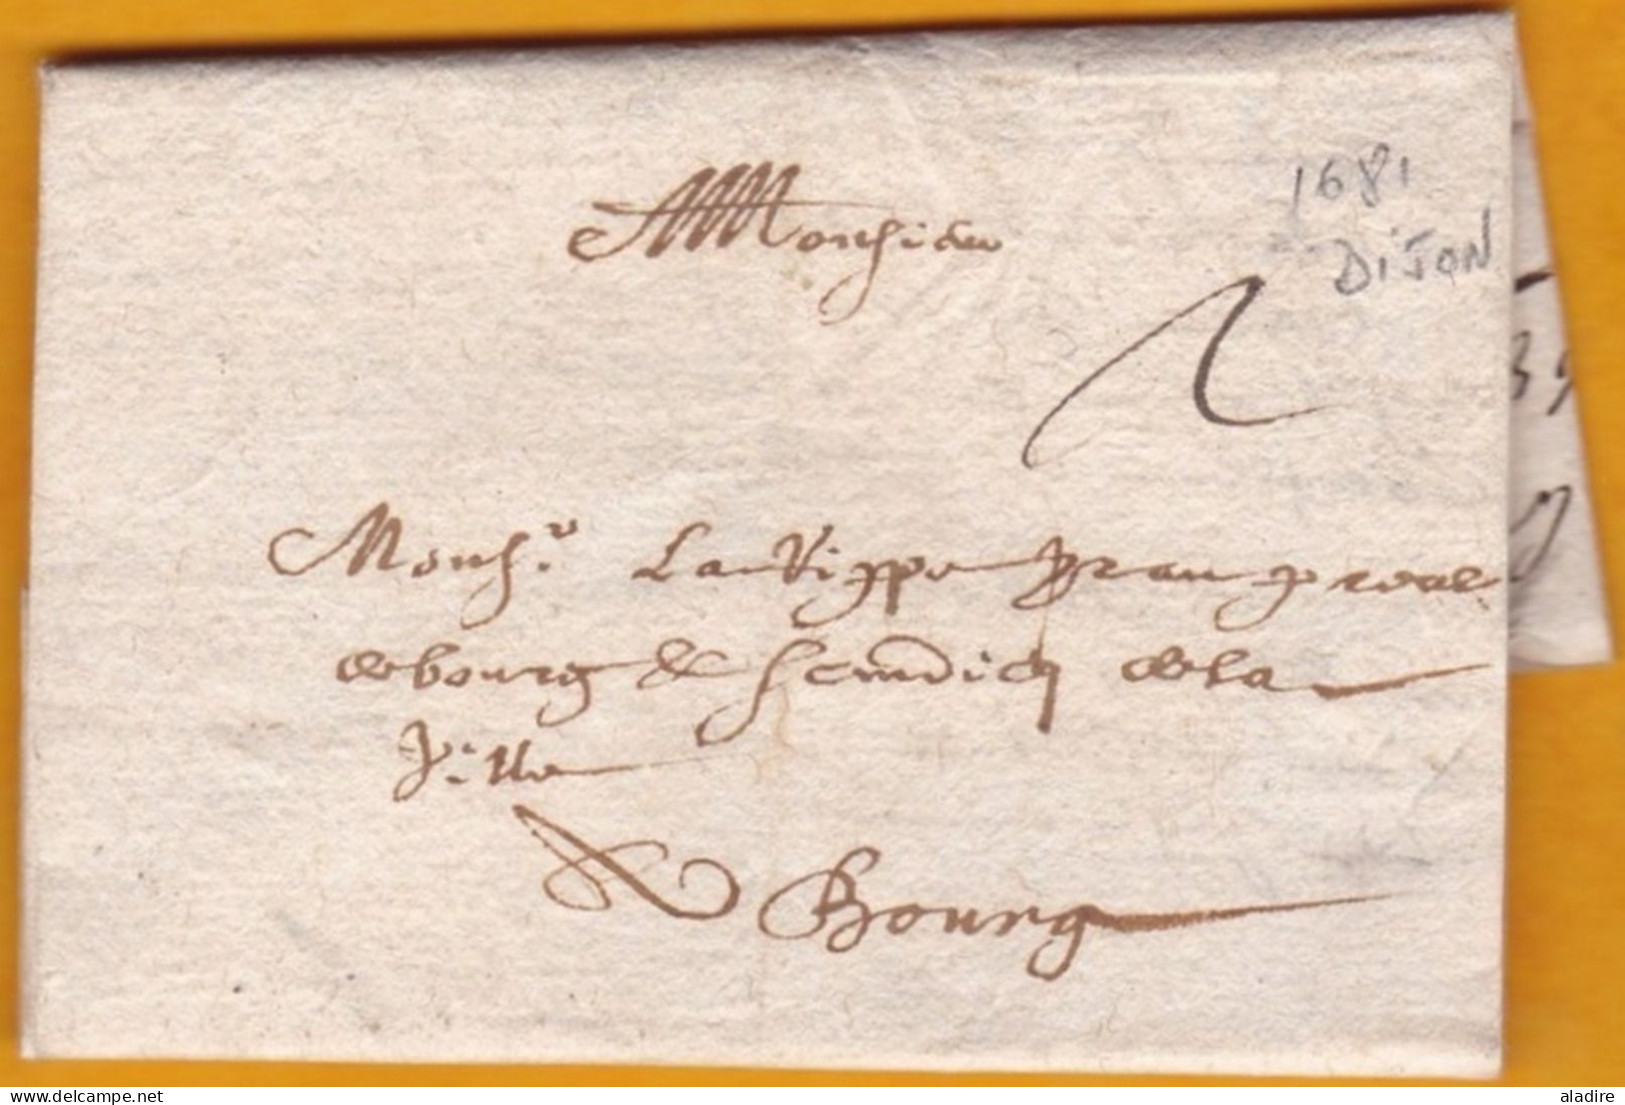 1681 - Marque Manuscrite Sur Lettre De Dijon, Côte D'Or Vers Bourg En Bresse, Ain - Règne De Louis XIV - ....-1700: Precursors